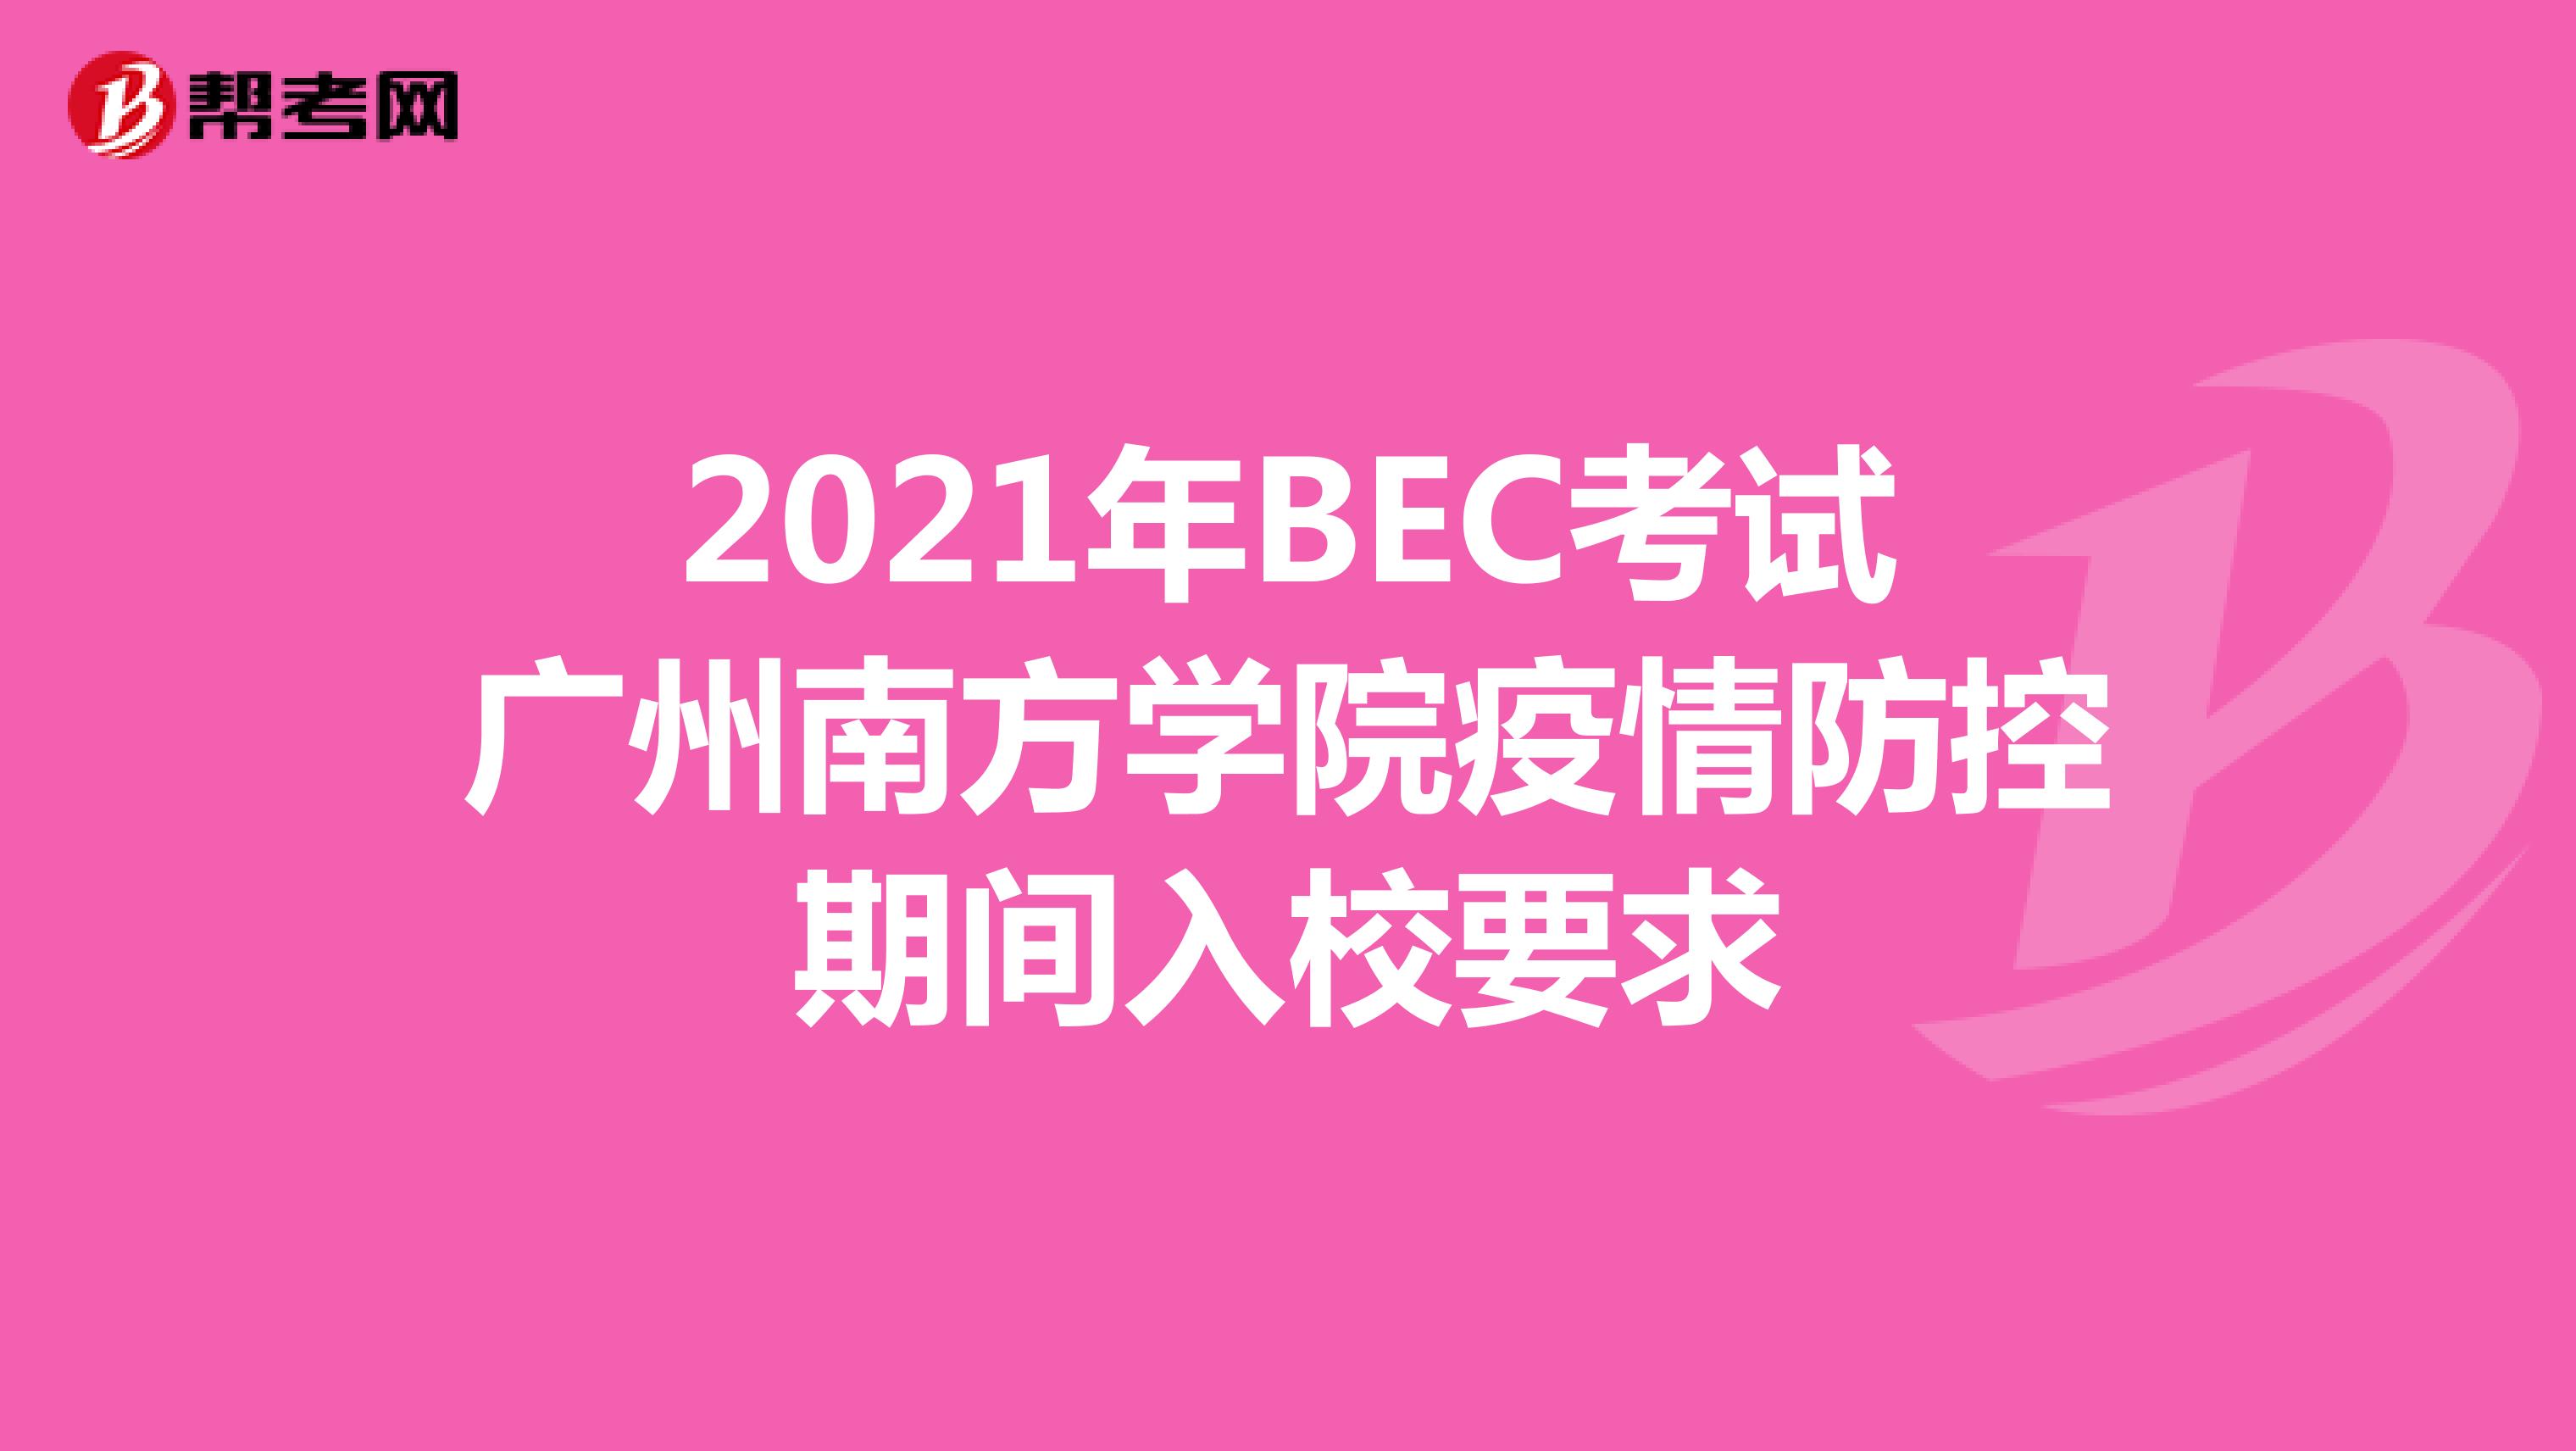 2021年BEC考试广州南方学院疫情防控期间入校要求